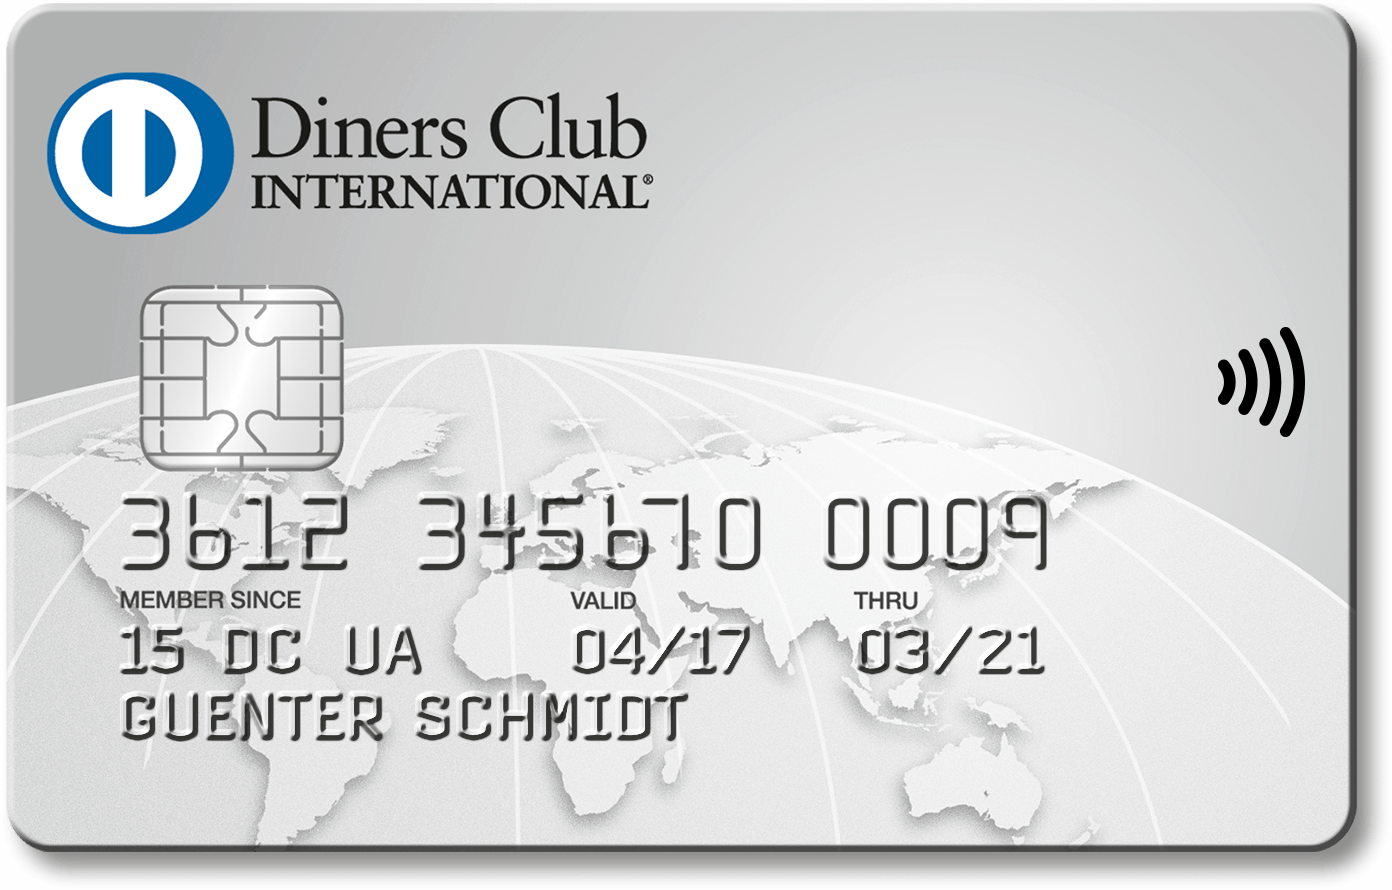 Diners Club Kreditkarte - Alle Infos Zur Beantragung & Den Konditionen